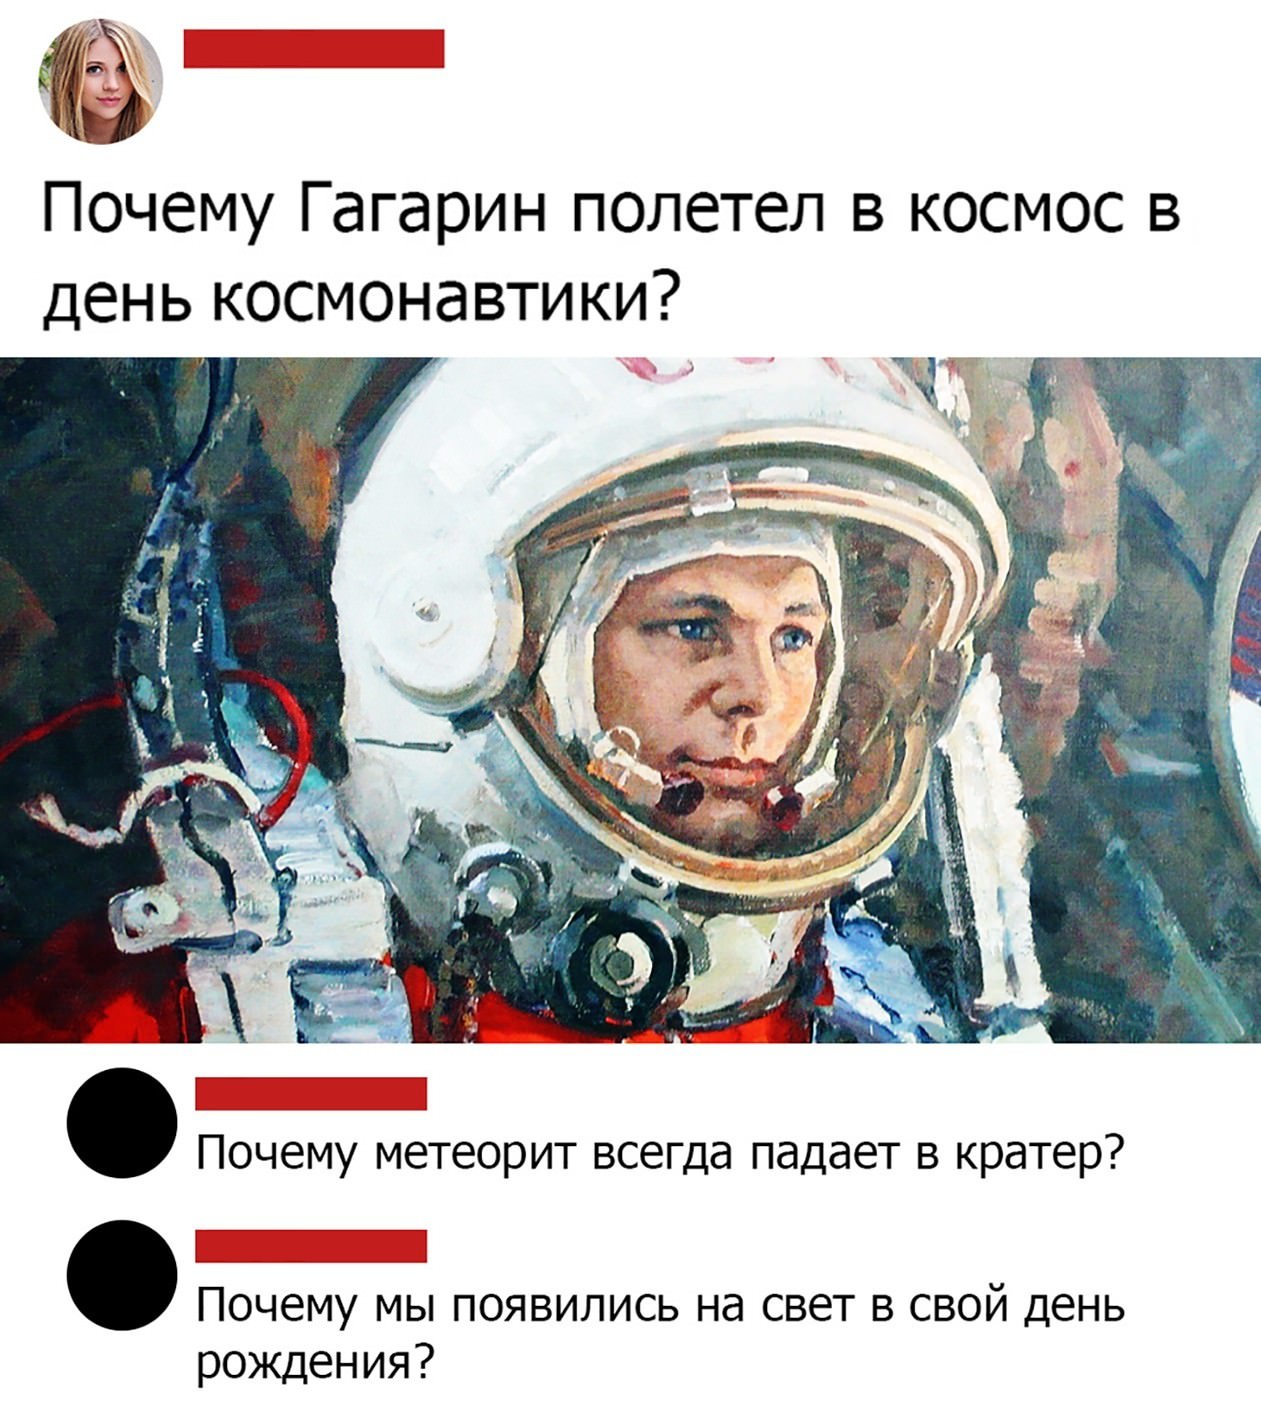 Поедем в космос полетим. День космонавтики. Гагри нполетел в космос. Гагарин шутки. Шутки про день космонавтики.